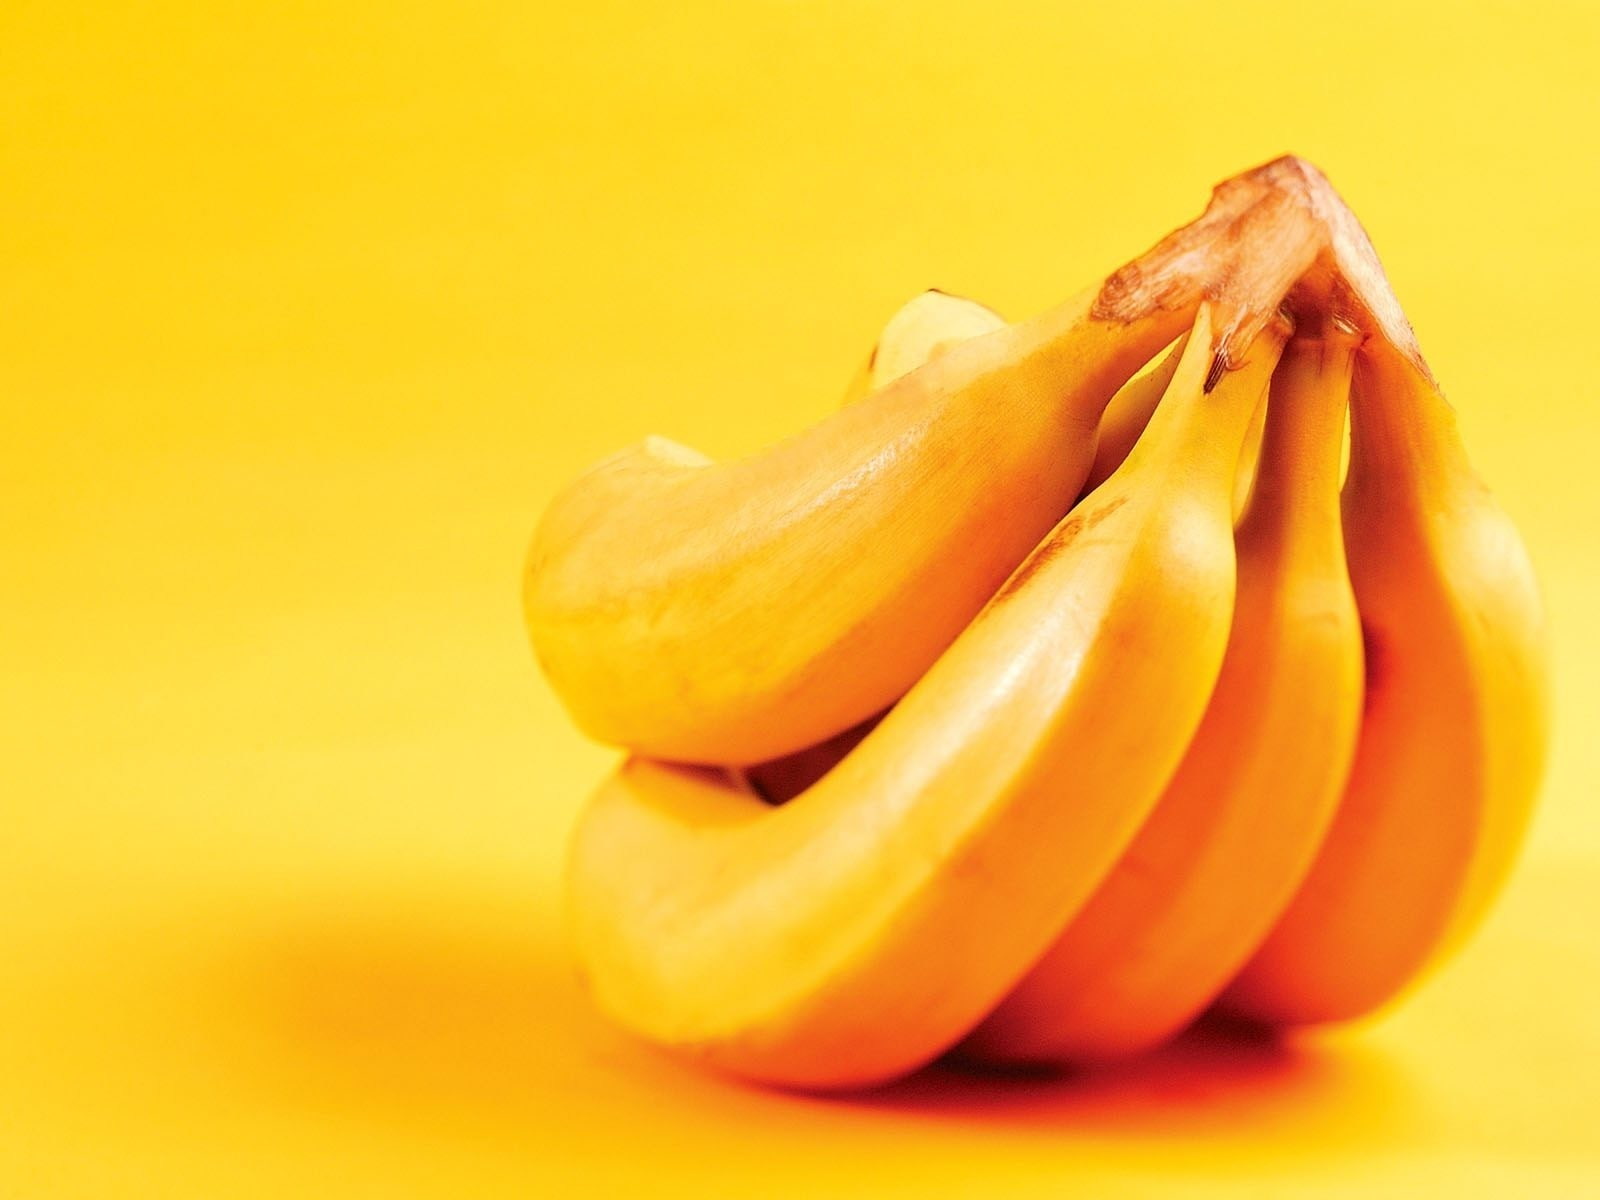 gambar pisang keju